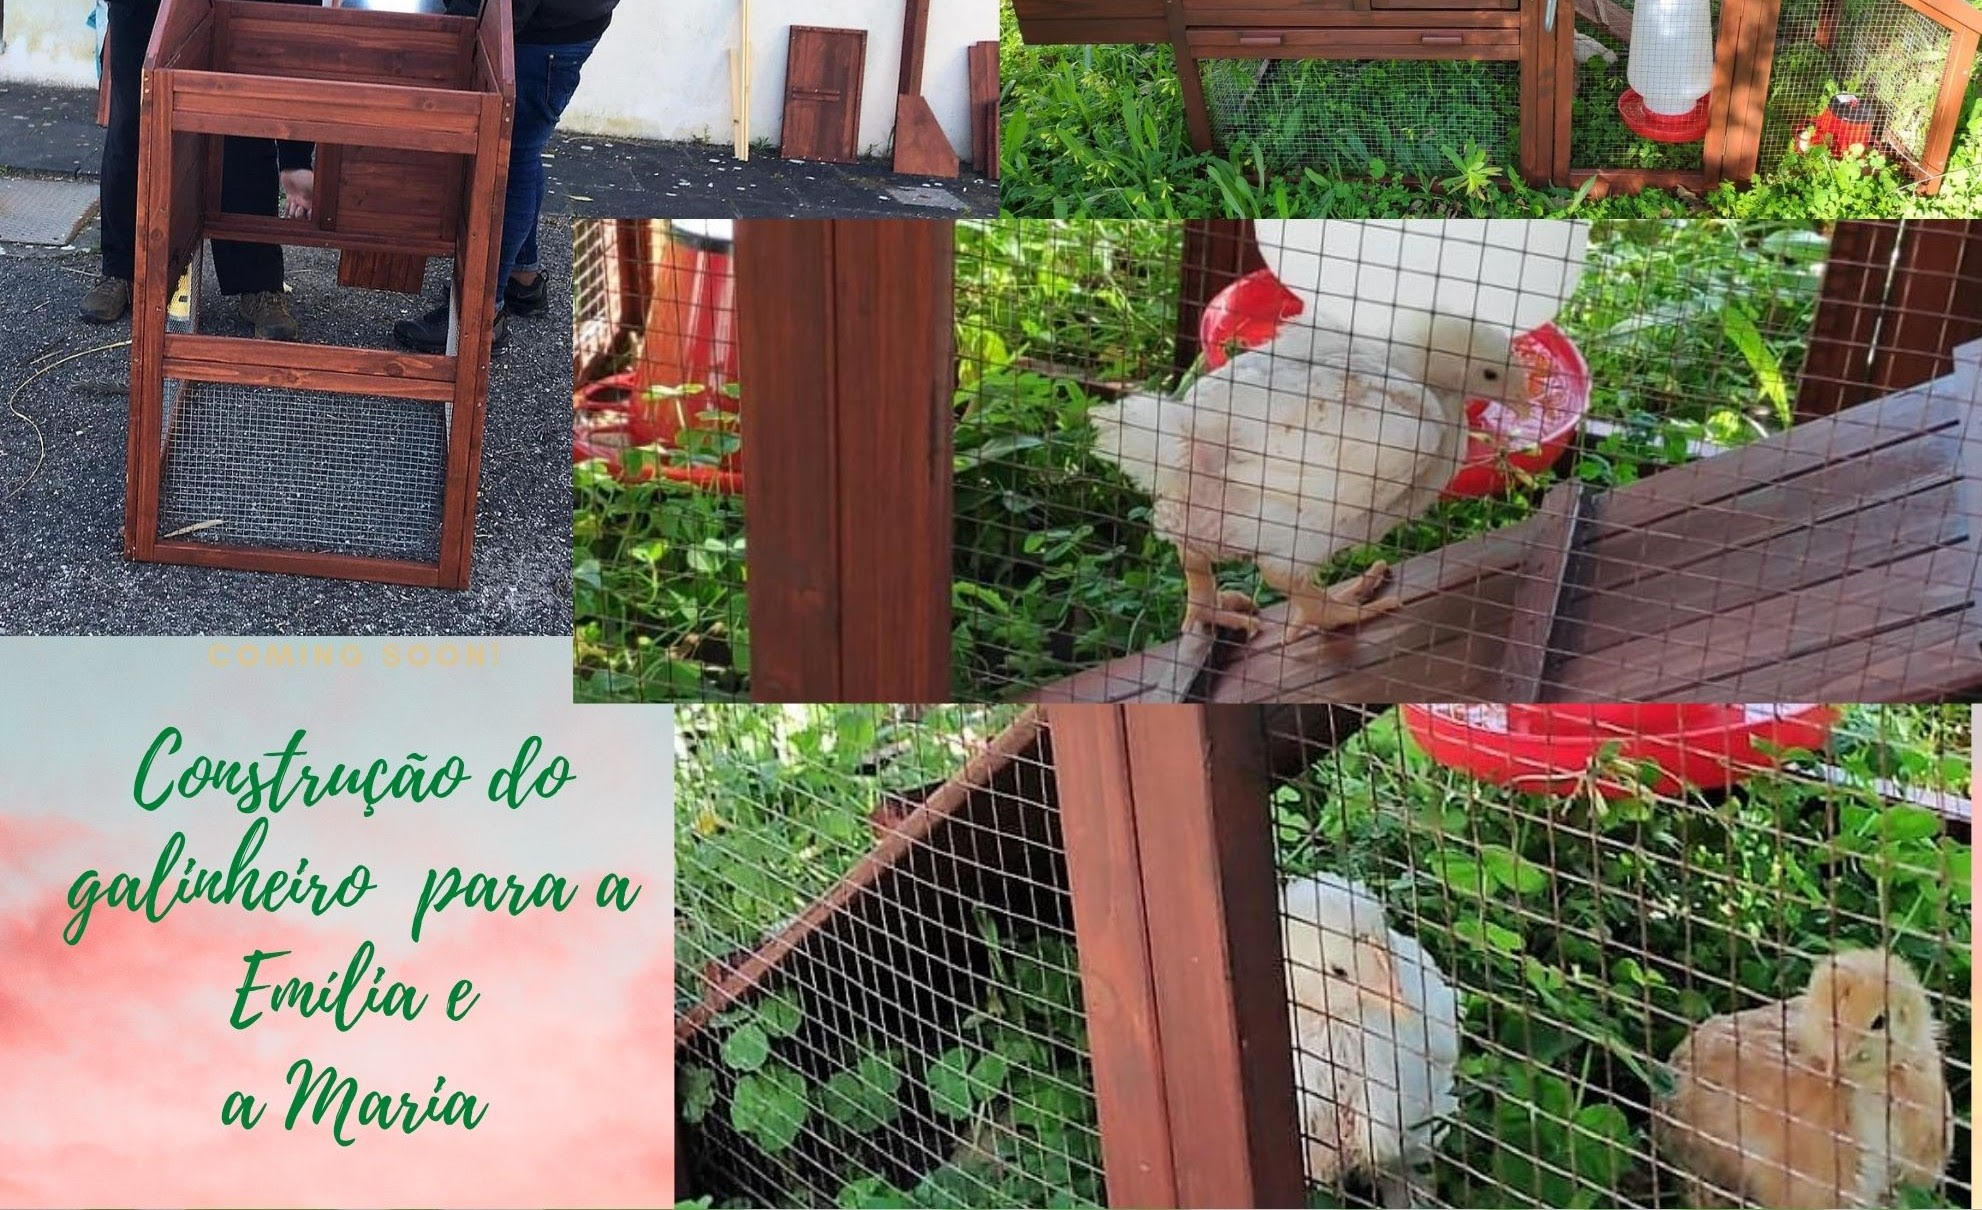 Oficina de construção do galinheiro para a “Maria” e a “Emília”. O galinheiro associado à plantação beneficia a  alimentação dos animais e limpa canteiros de insetos e plantas invasoras.